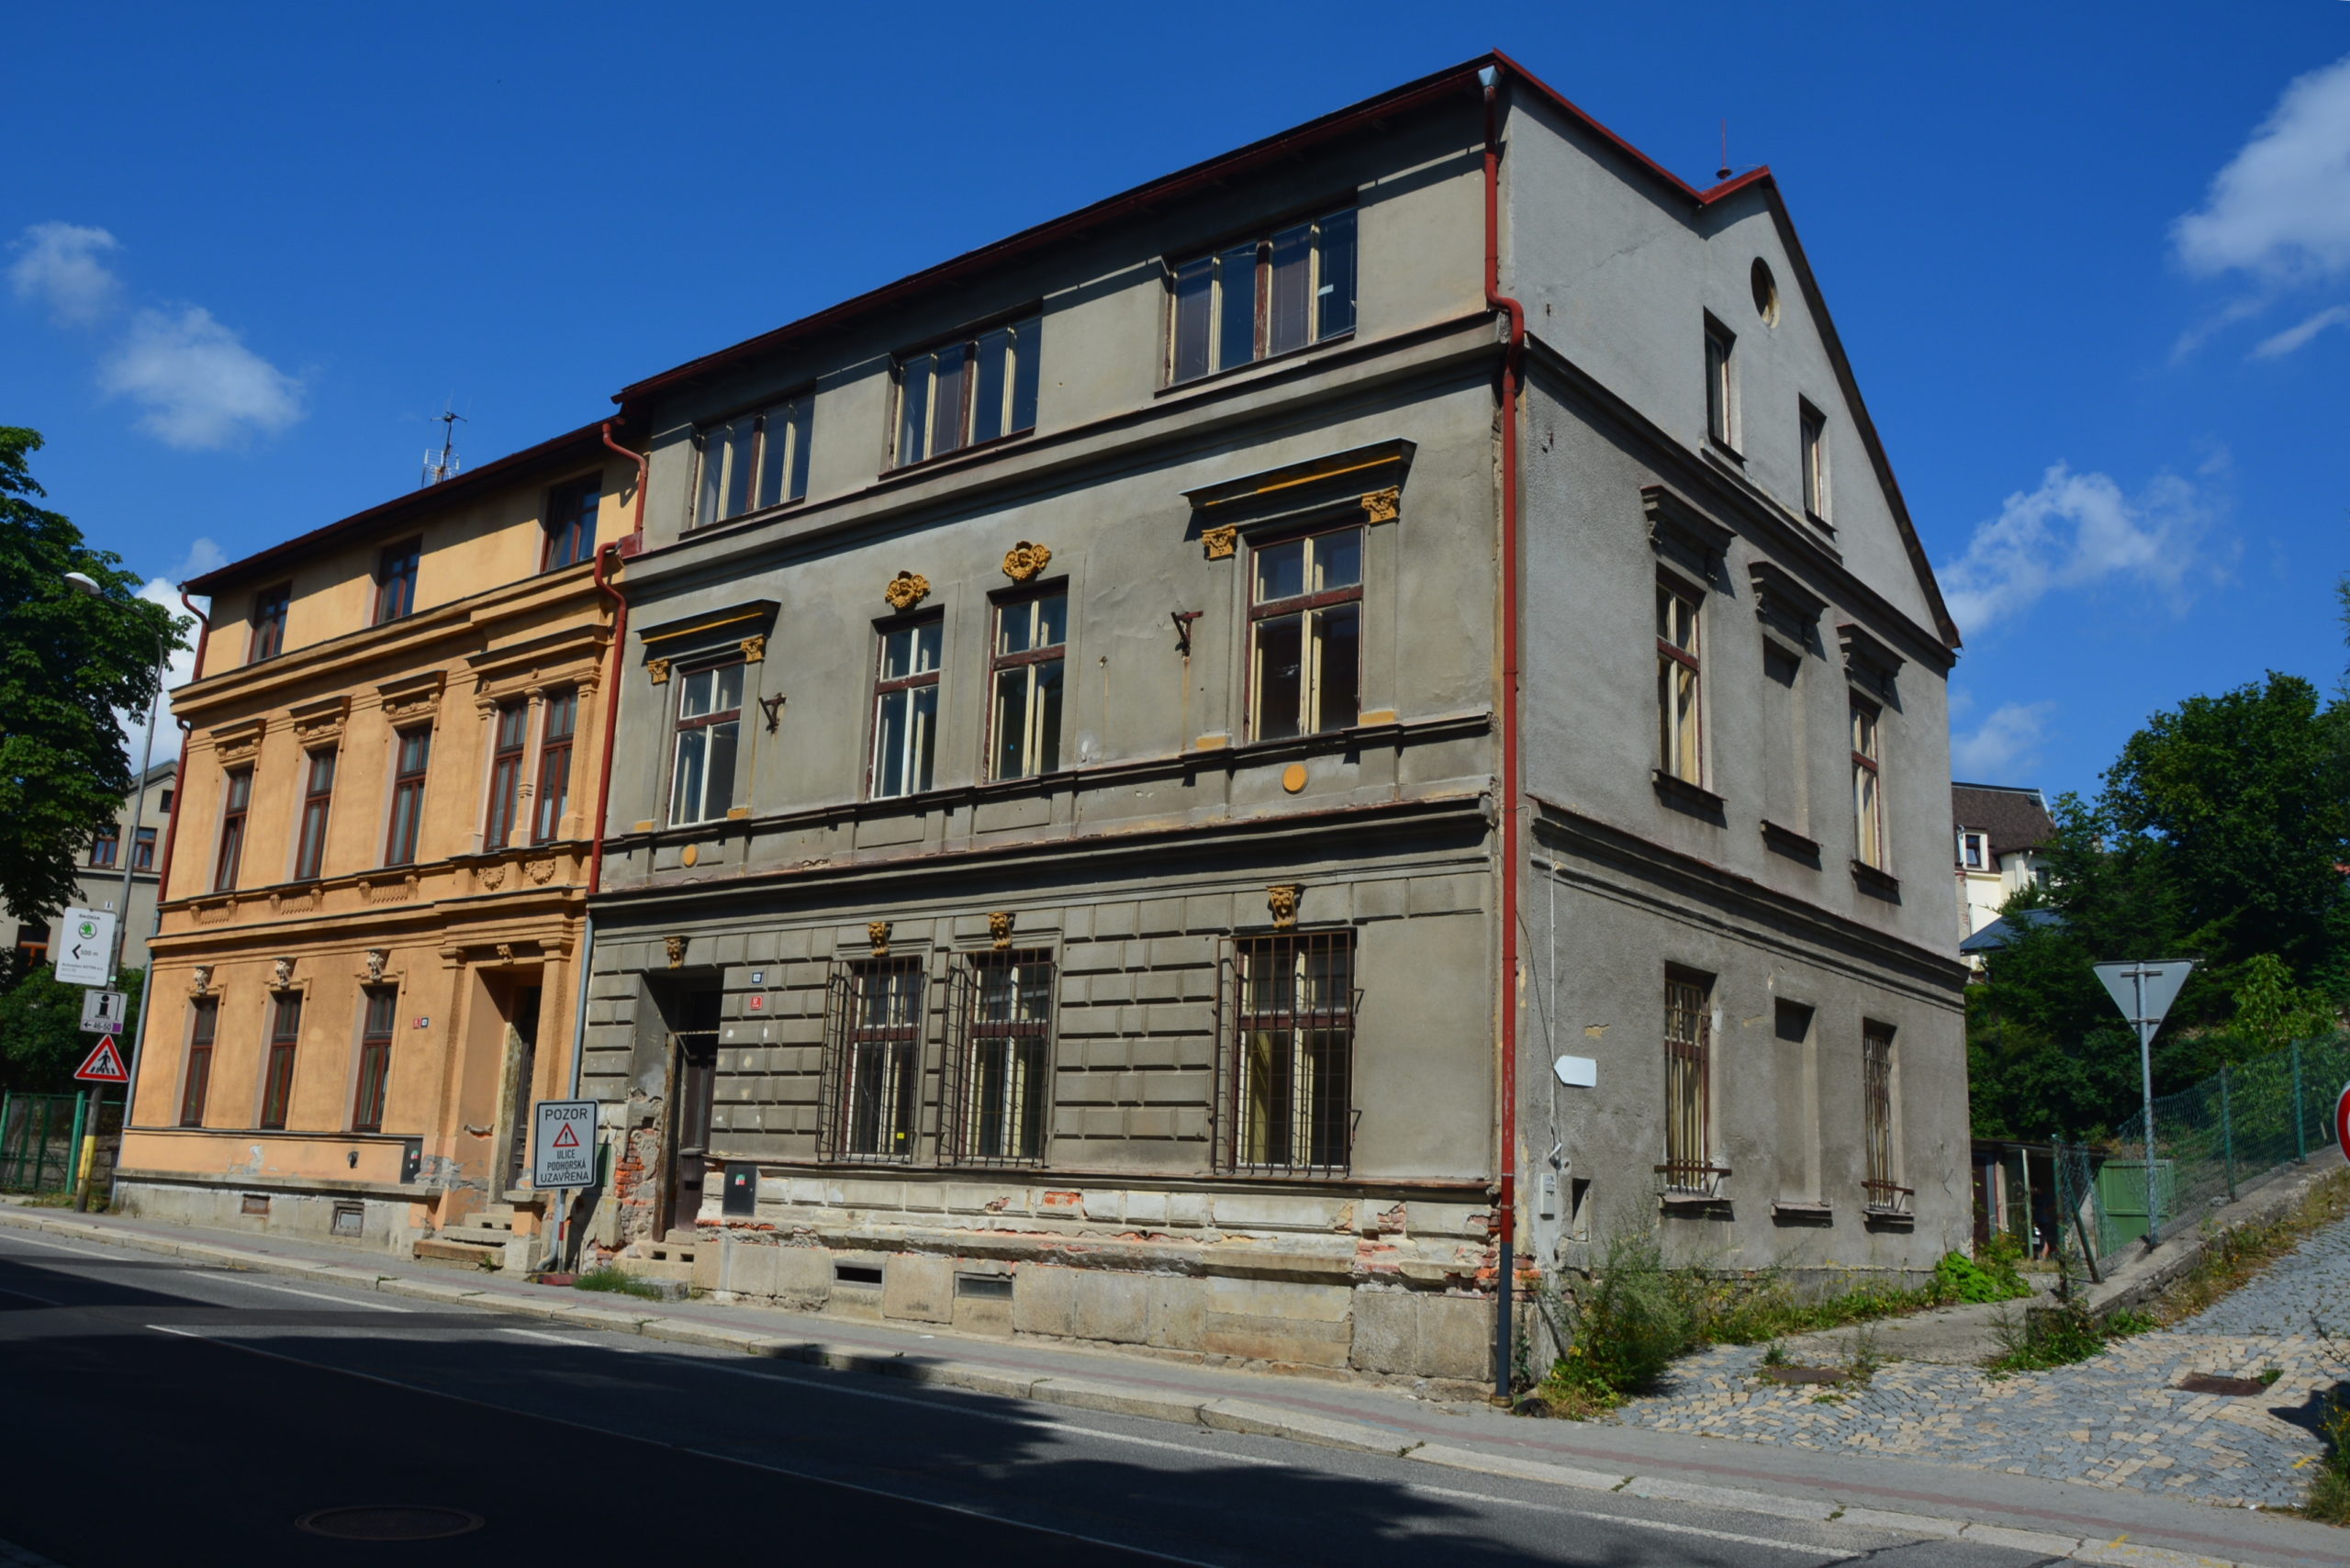 Zchátralá budova bývalého jabloneckého azylového domu se promění v městské byty